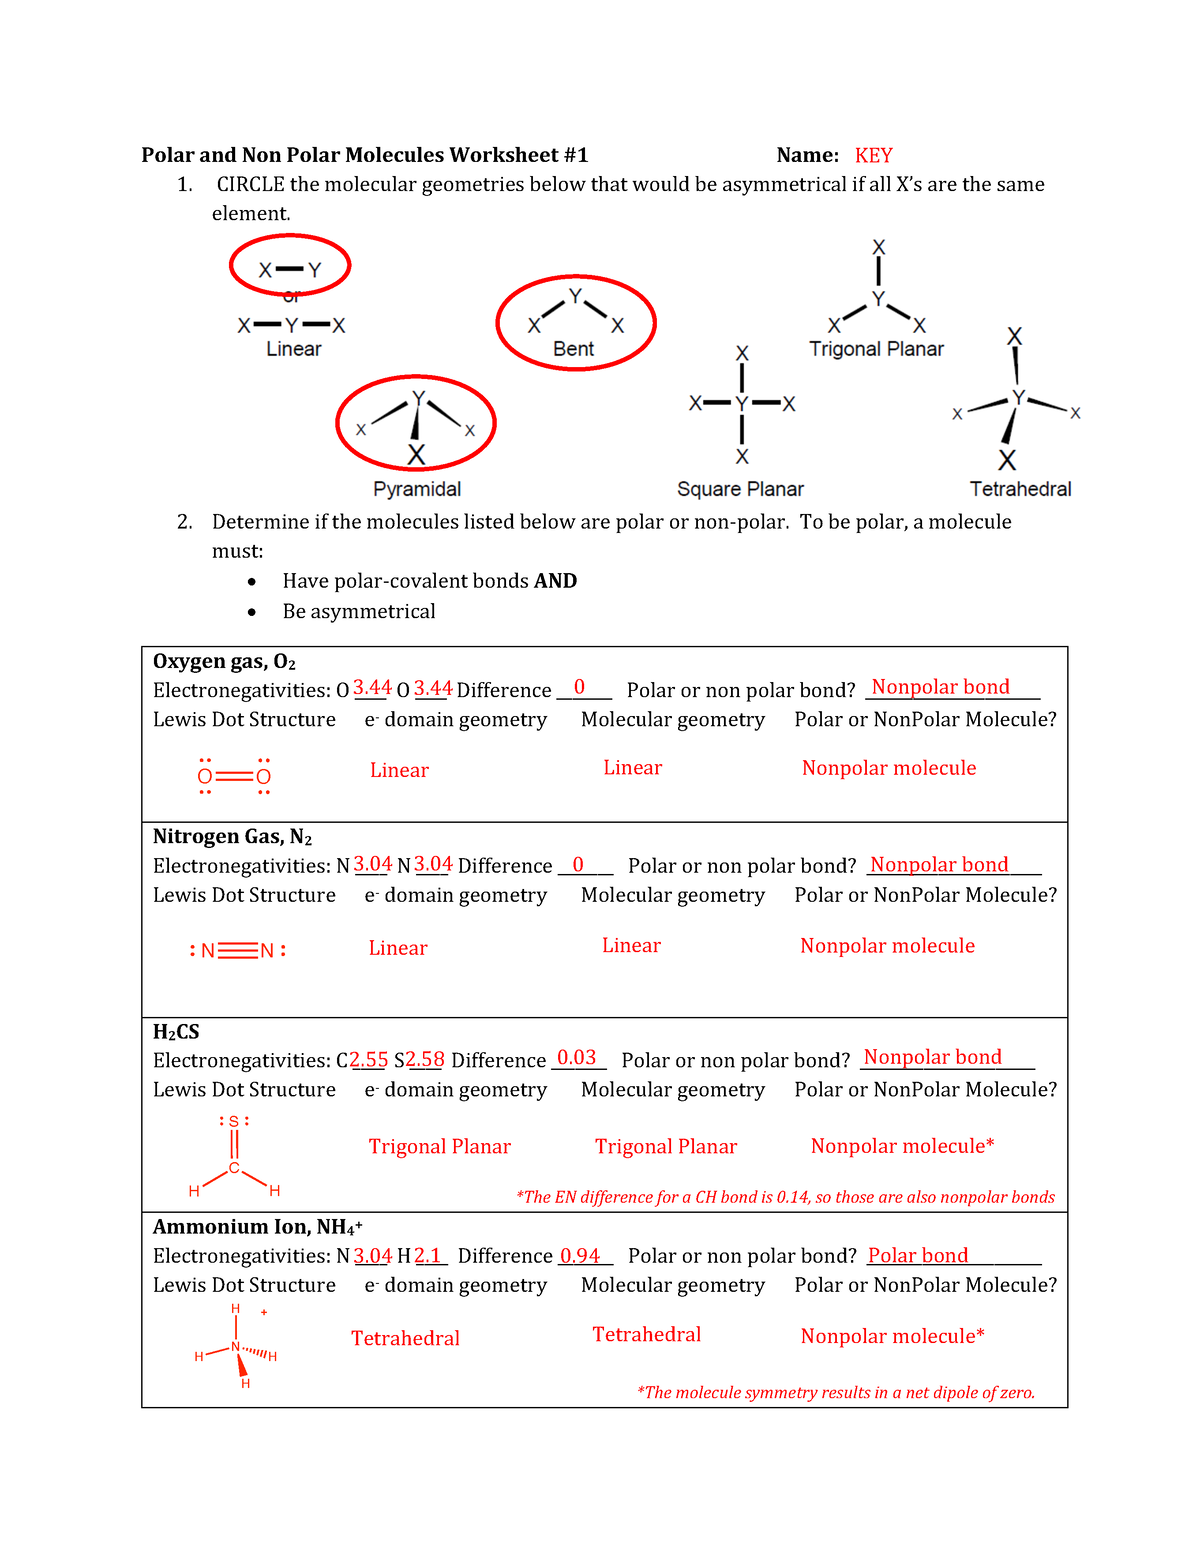 polar-and-non-polar-molecules-worksheet-1-key-circle-the-molecular